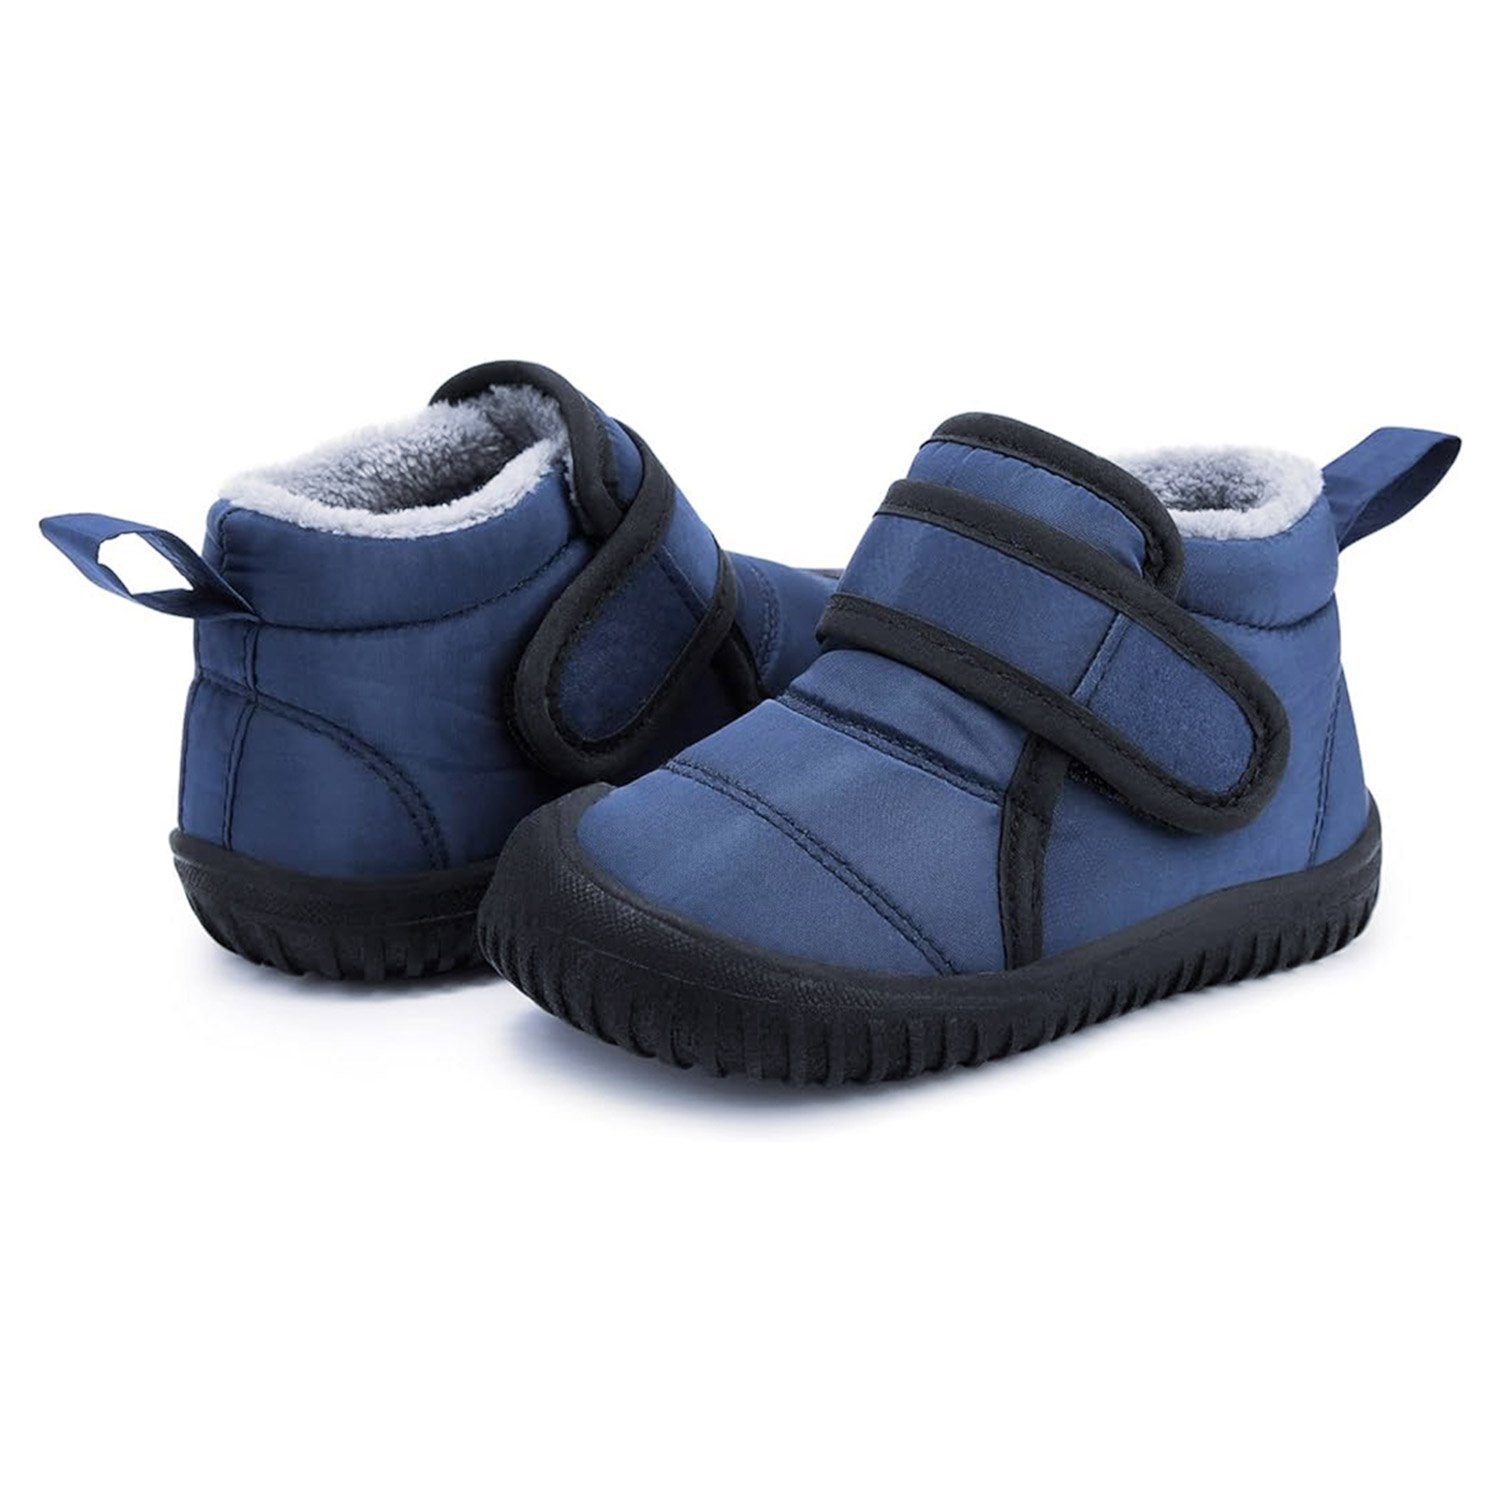 Stiefel Kinderschuhe Leichte Warme Daisred Blau Boots Bequem